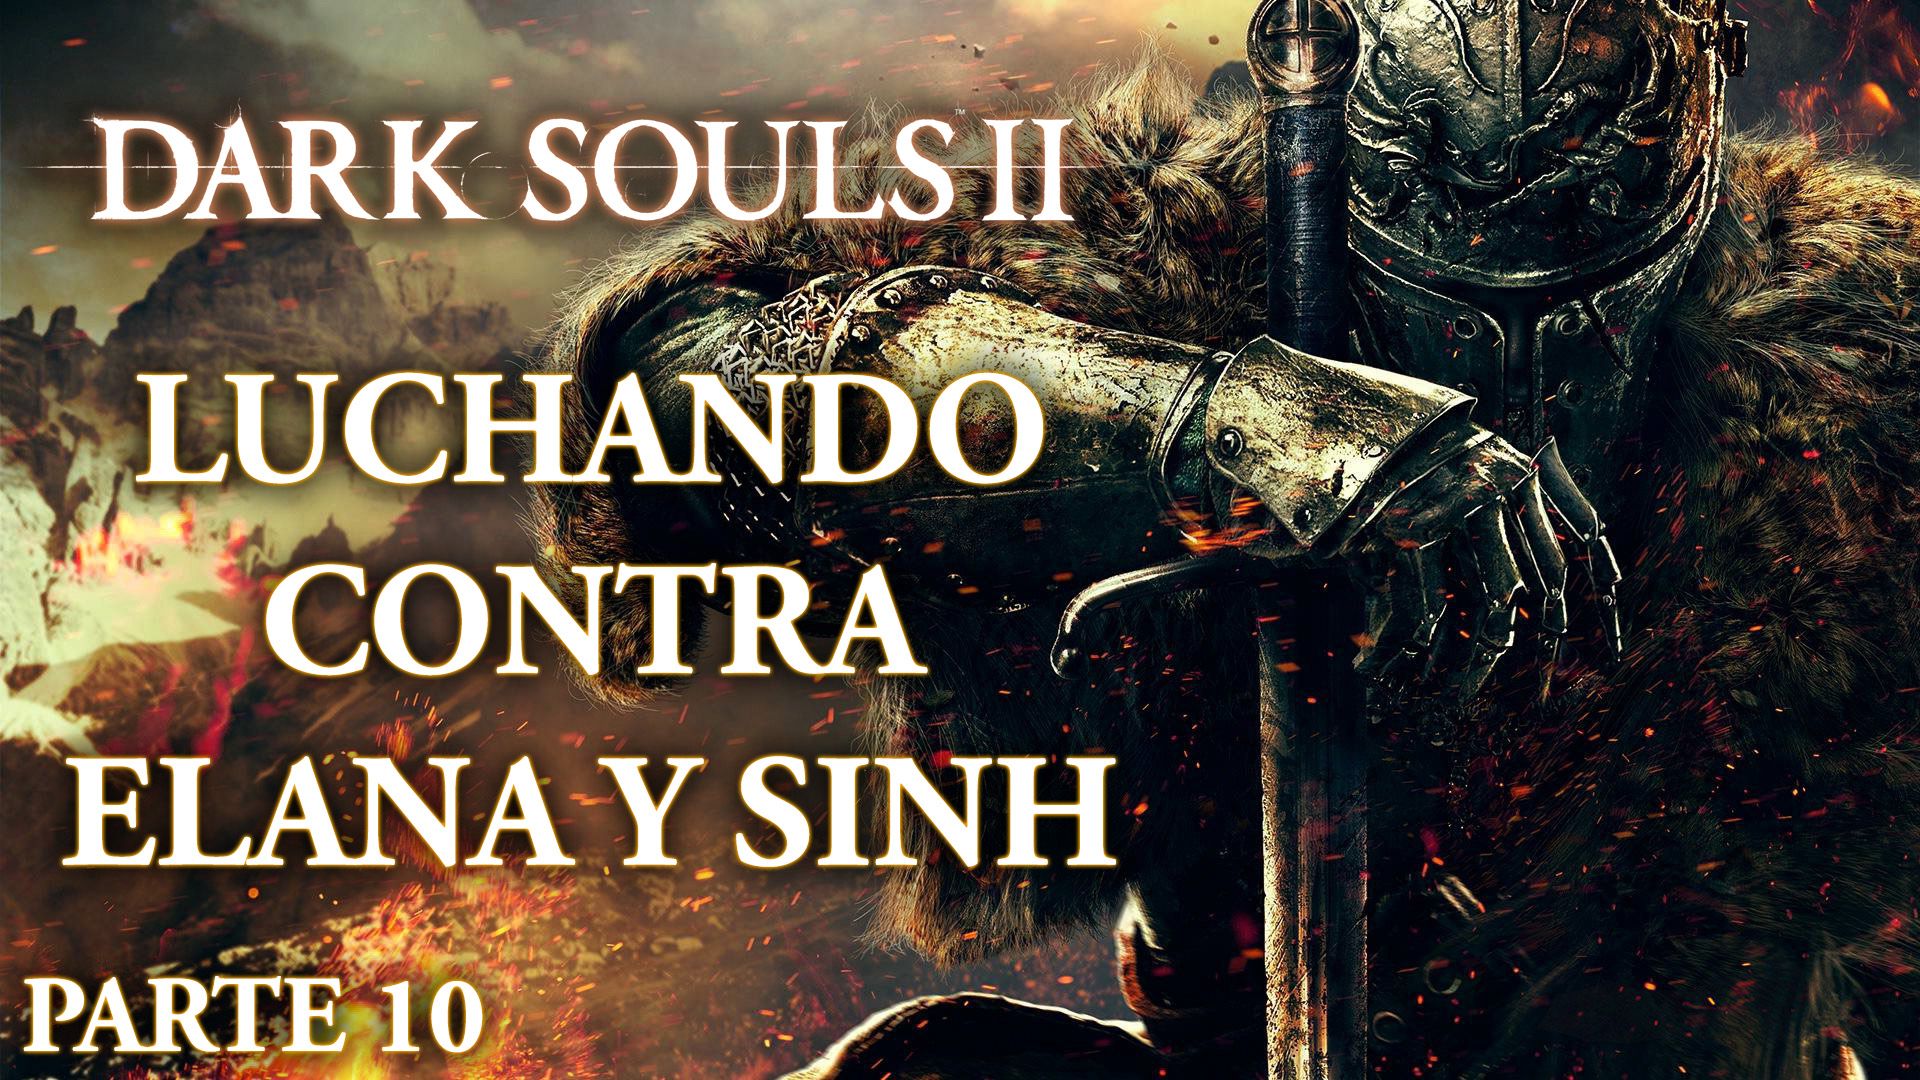 Serie Dark Souls II Parte 10: Luchando contra Elana y Sinh